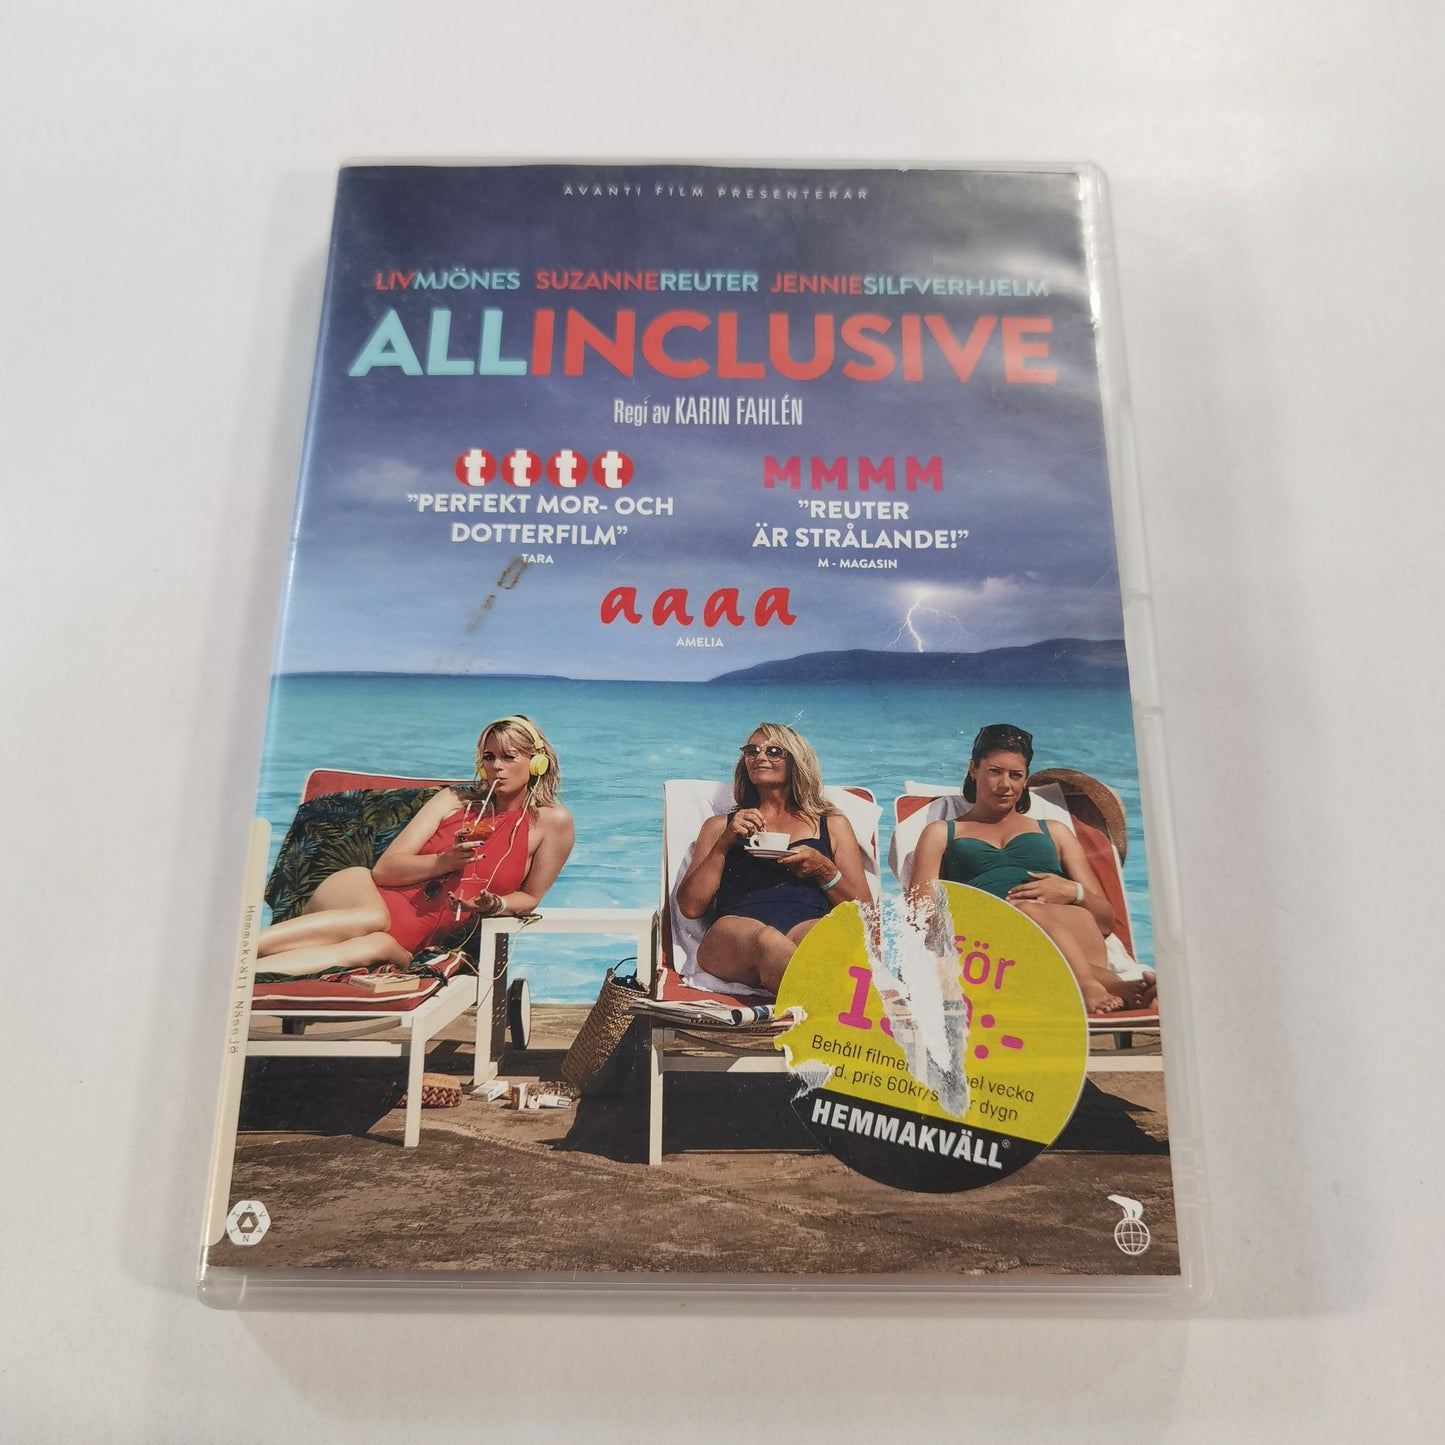 All Inclusive (2017) - DVD SE 2018